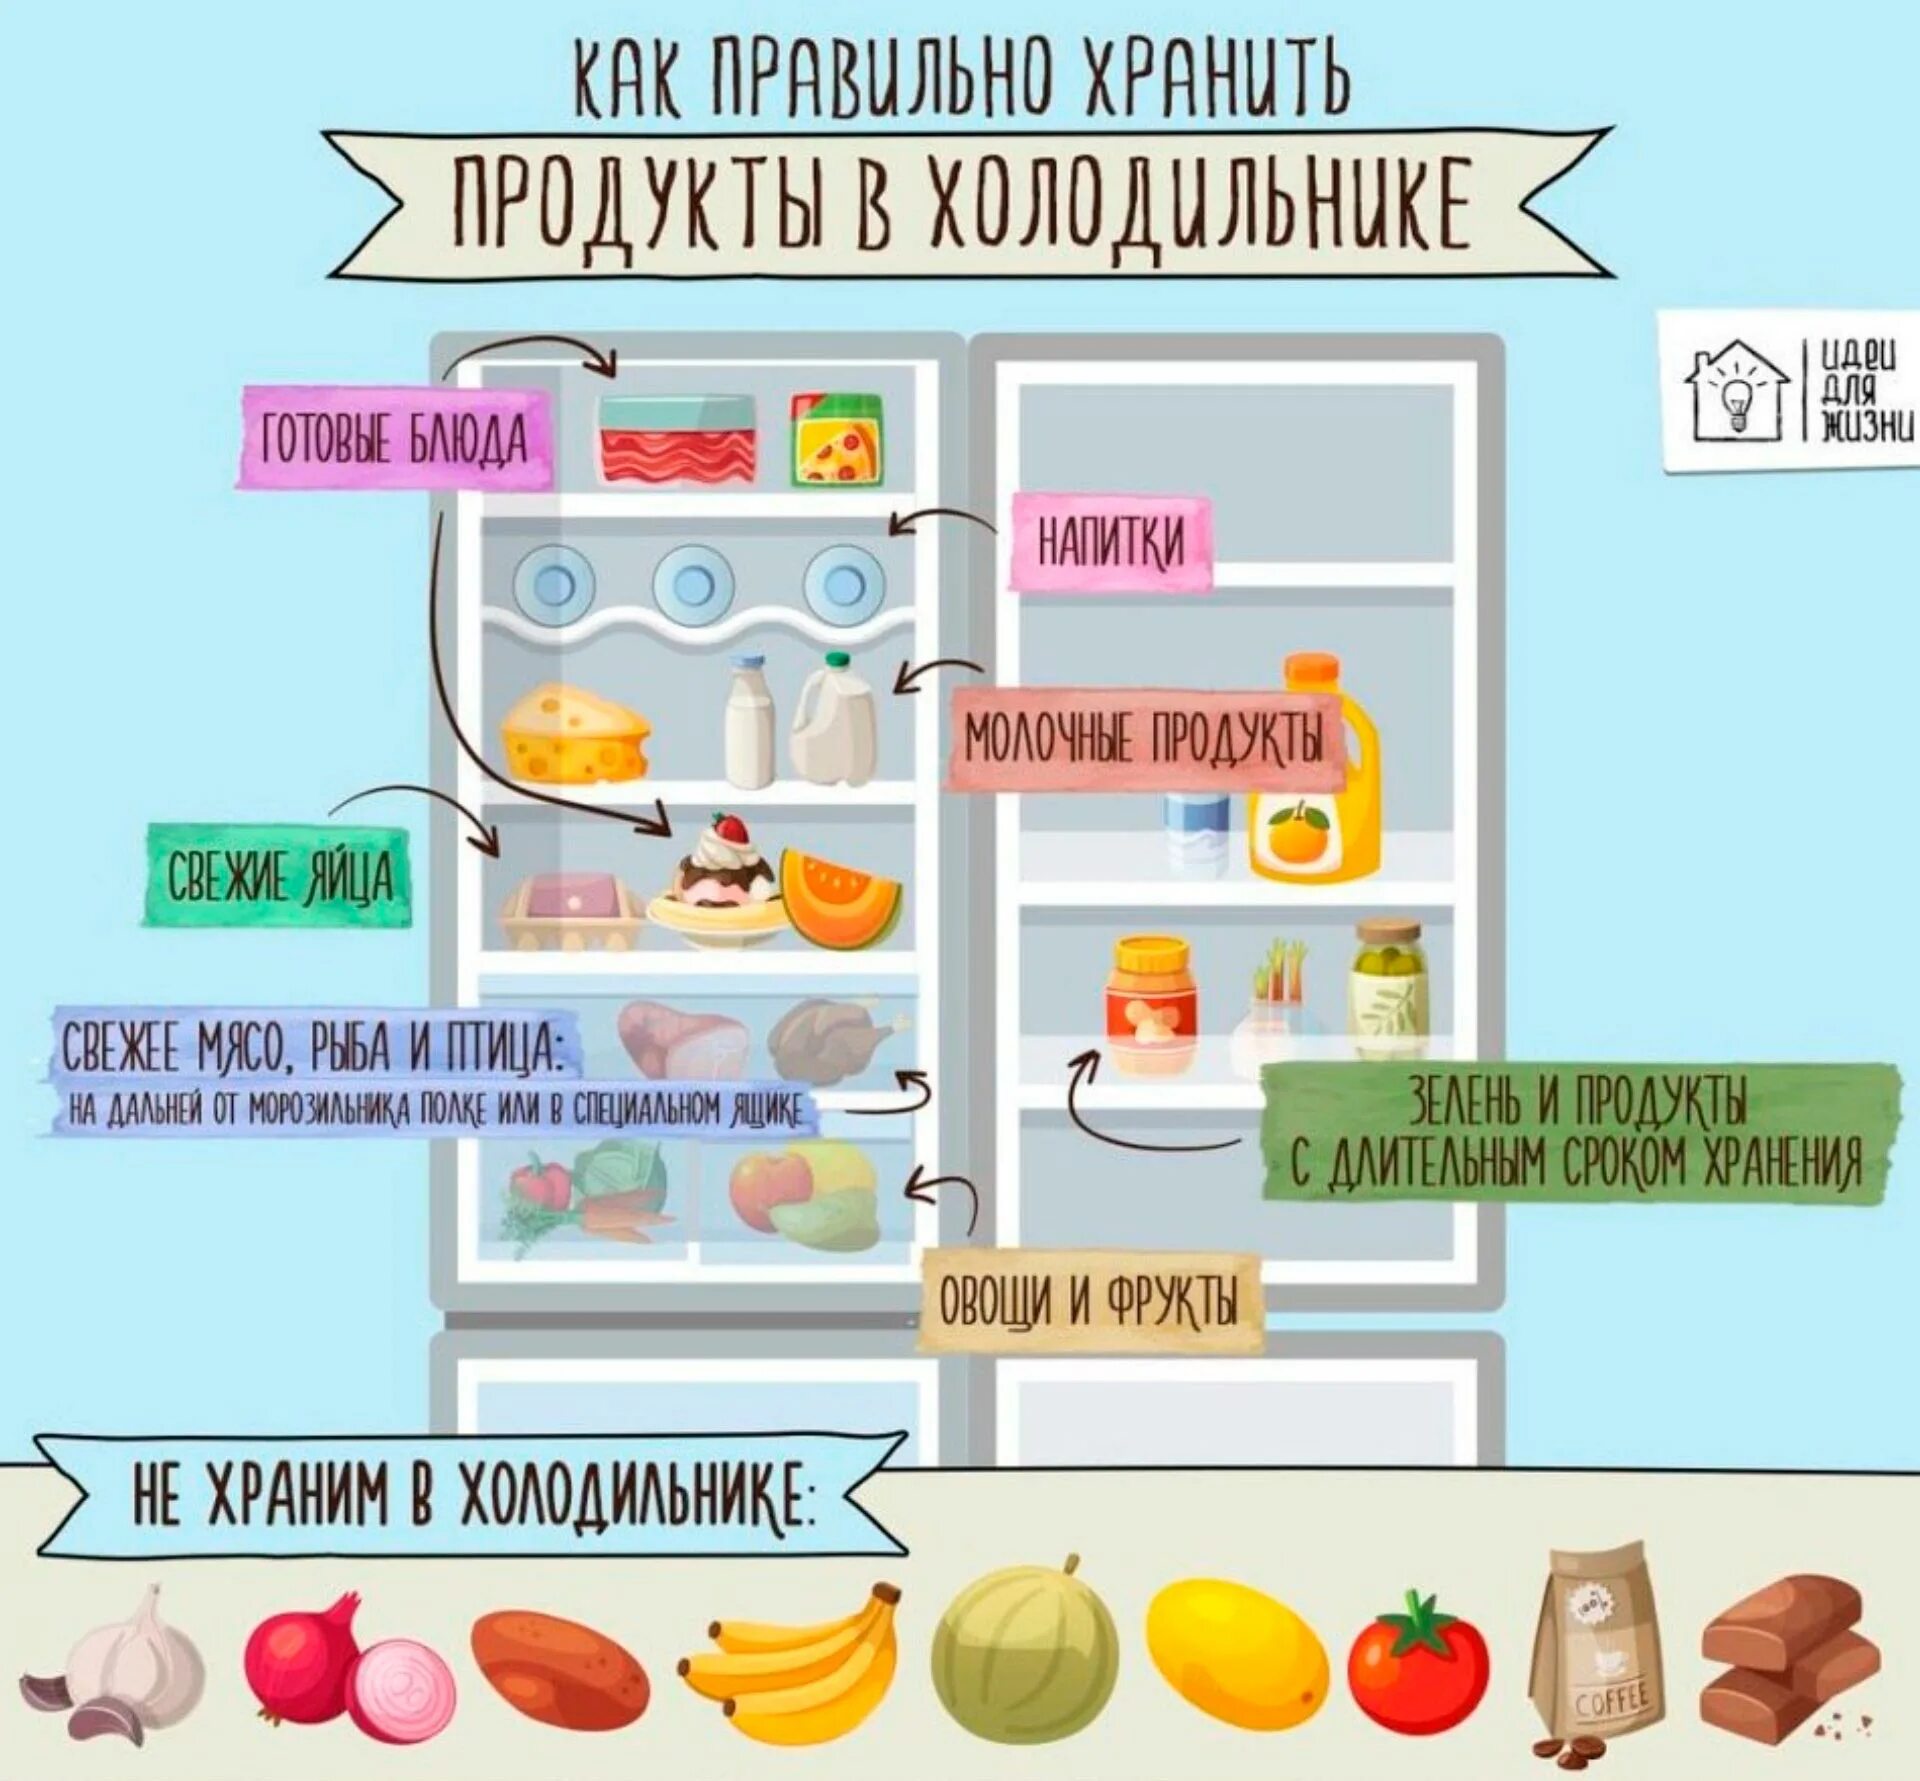 Производство и хранение продуктов. Хранение продуктов в холодильнике. Размещение продуктов в холодильнике. Правильное хранение продуктов в холодильнике. Распределение продуктов в холодильнике.